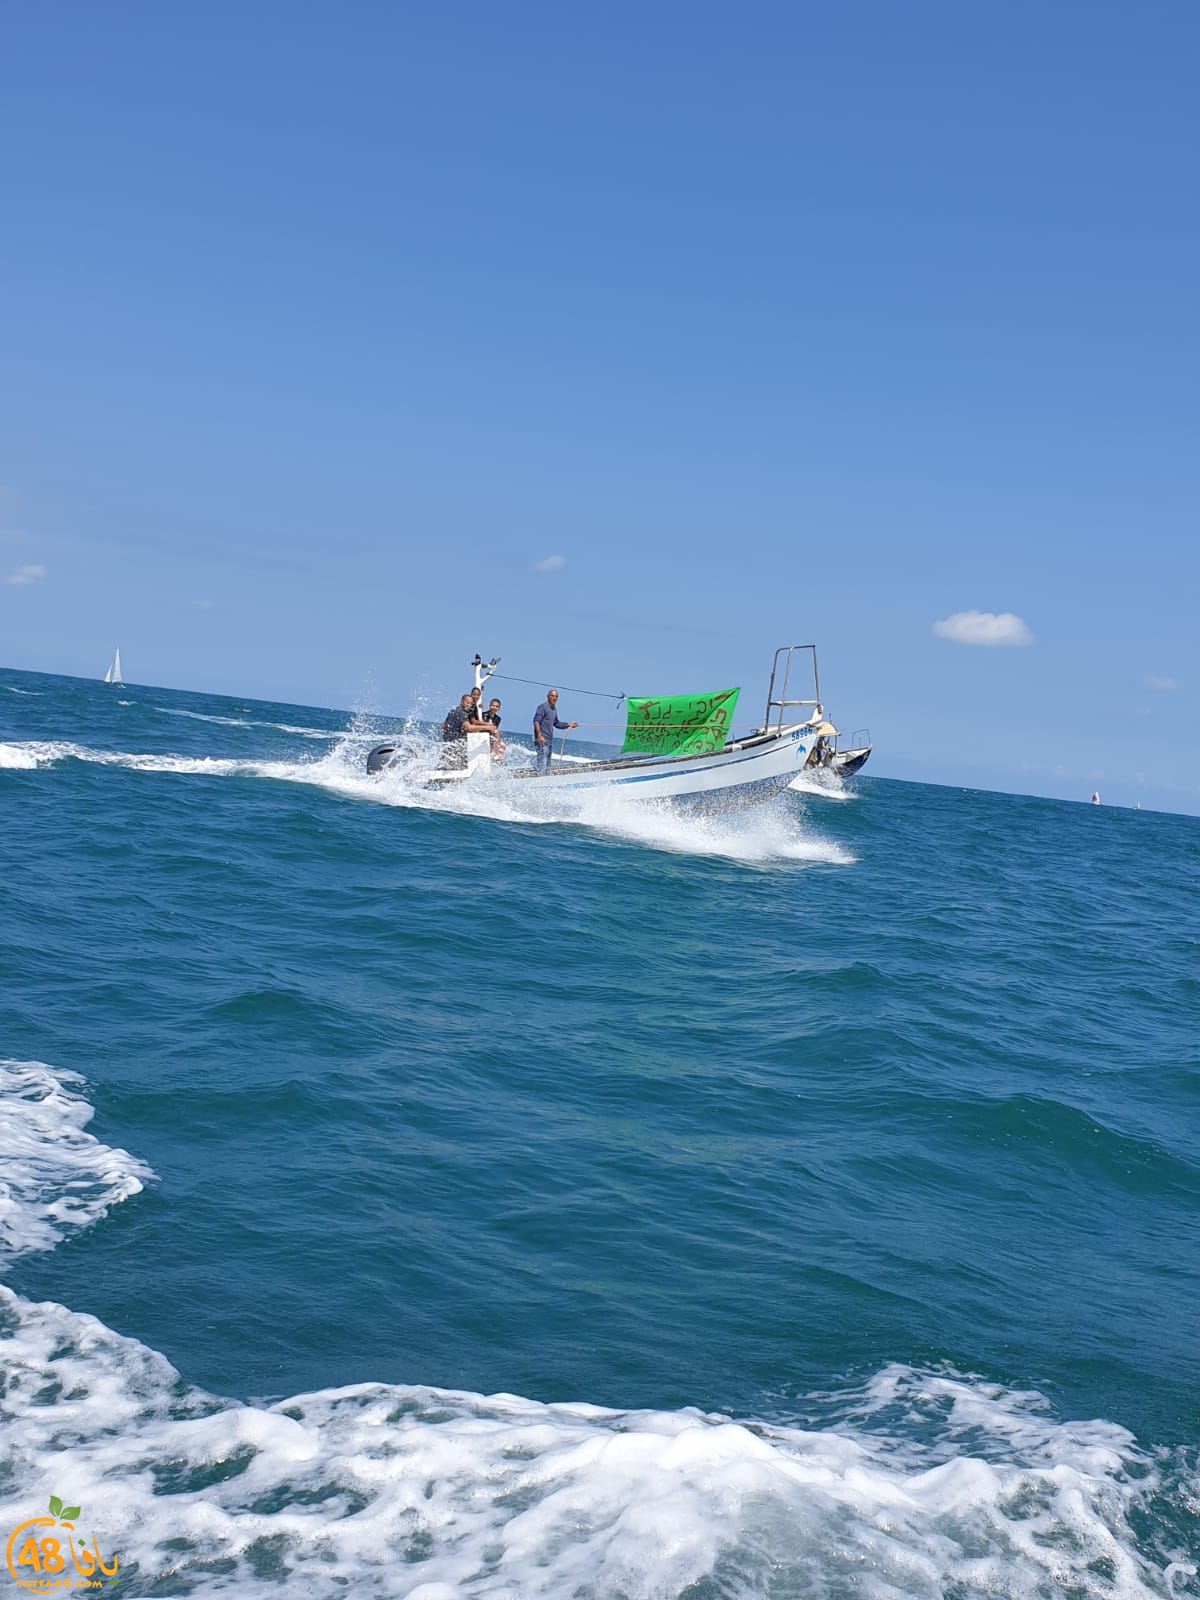  فيديو: انطلاق قافلة زوارق الصيادين البحر رزقنا وموروثنا 3 من ميناء يافا